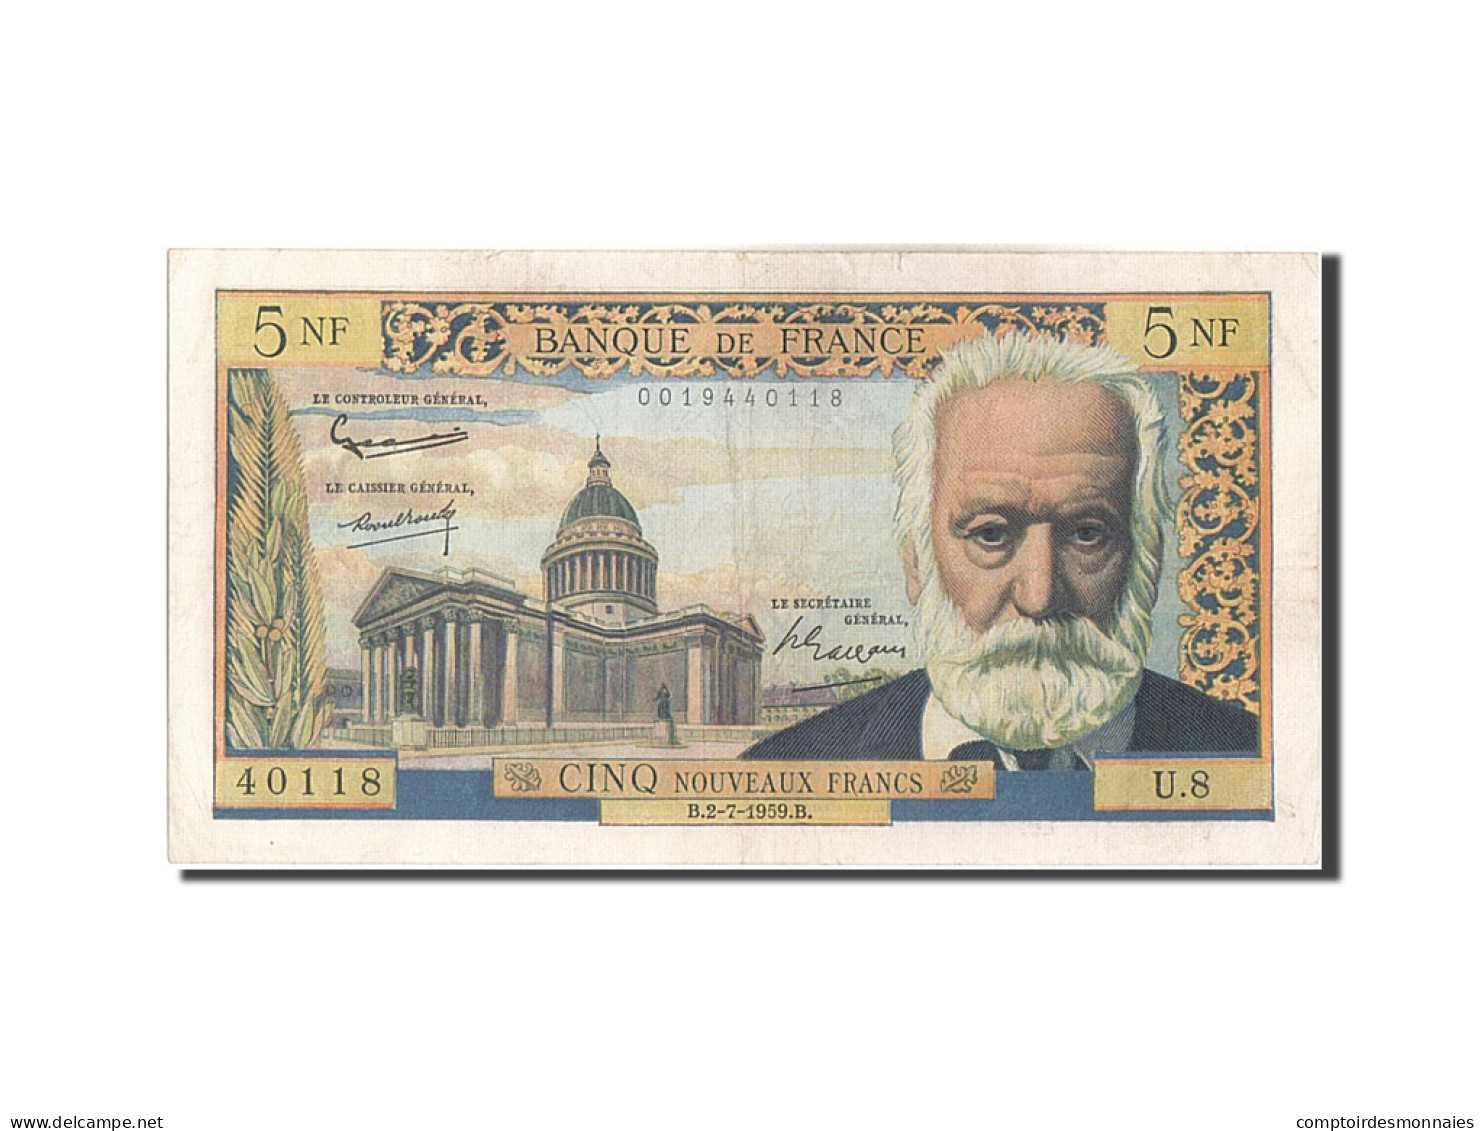 Billet, France, 5 Nouveaux Francs, 5 NF 1959-1965 ''Victor Hugo'', 1959 - 5 NF 1959-1965 ''Victor Hugo''